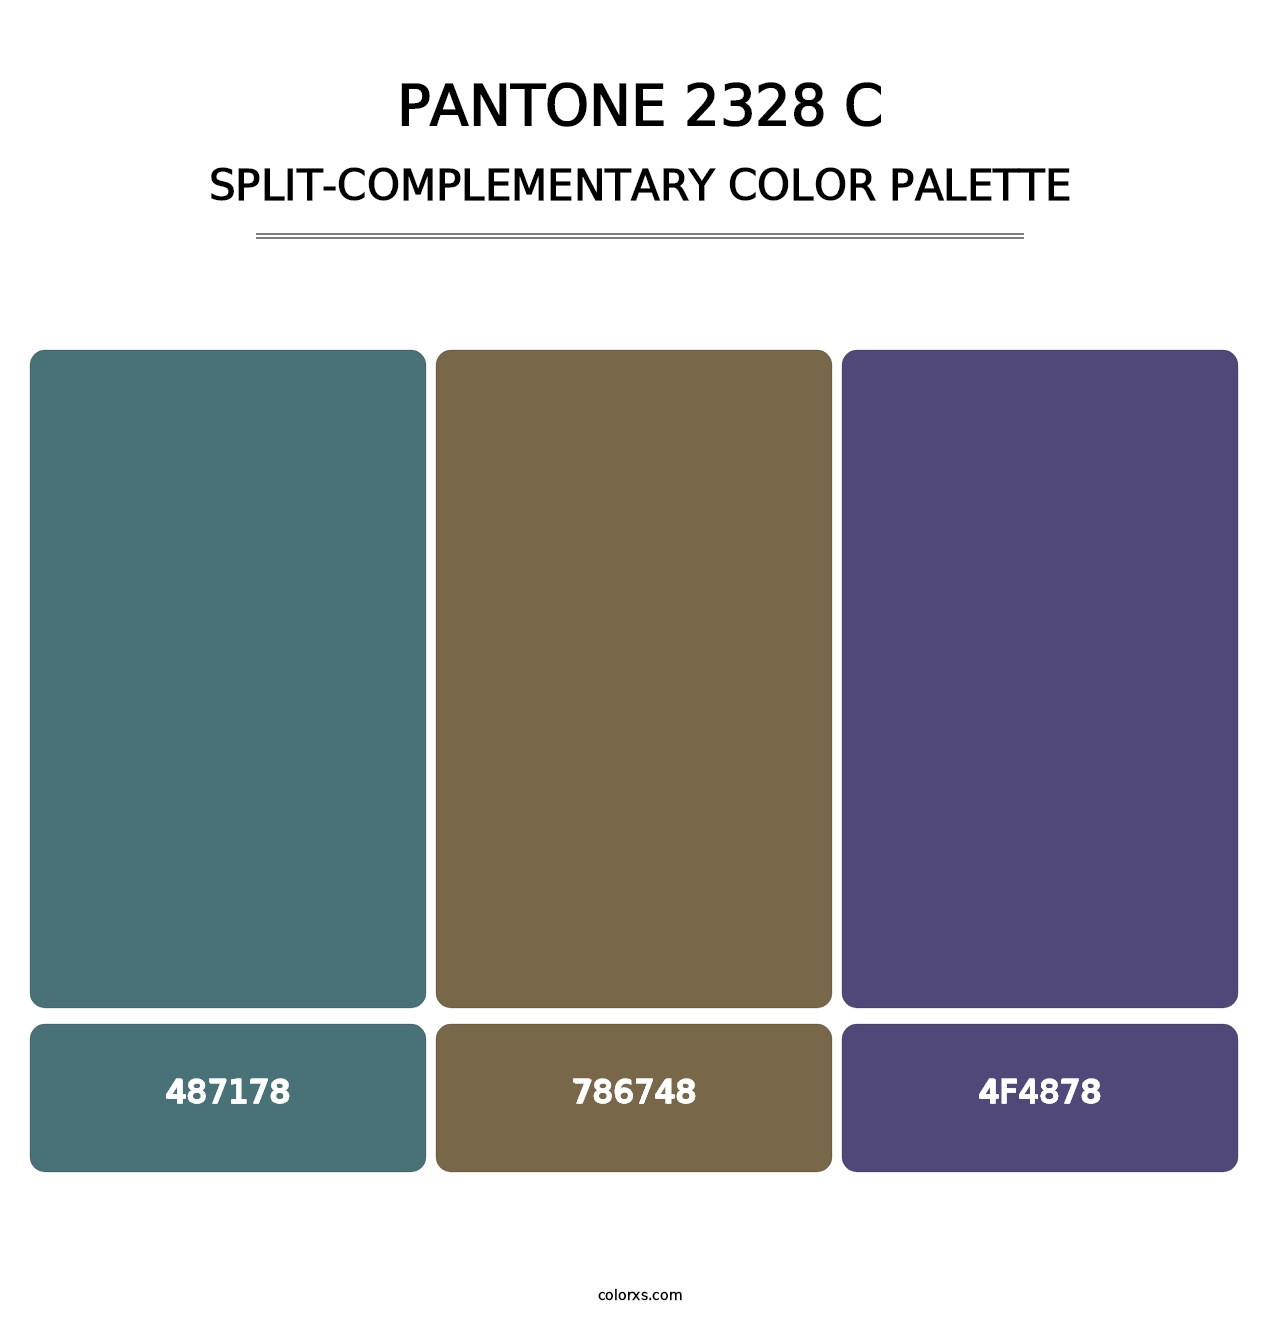 PANTONE 2328 C - Split-Complementary Color Palette